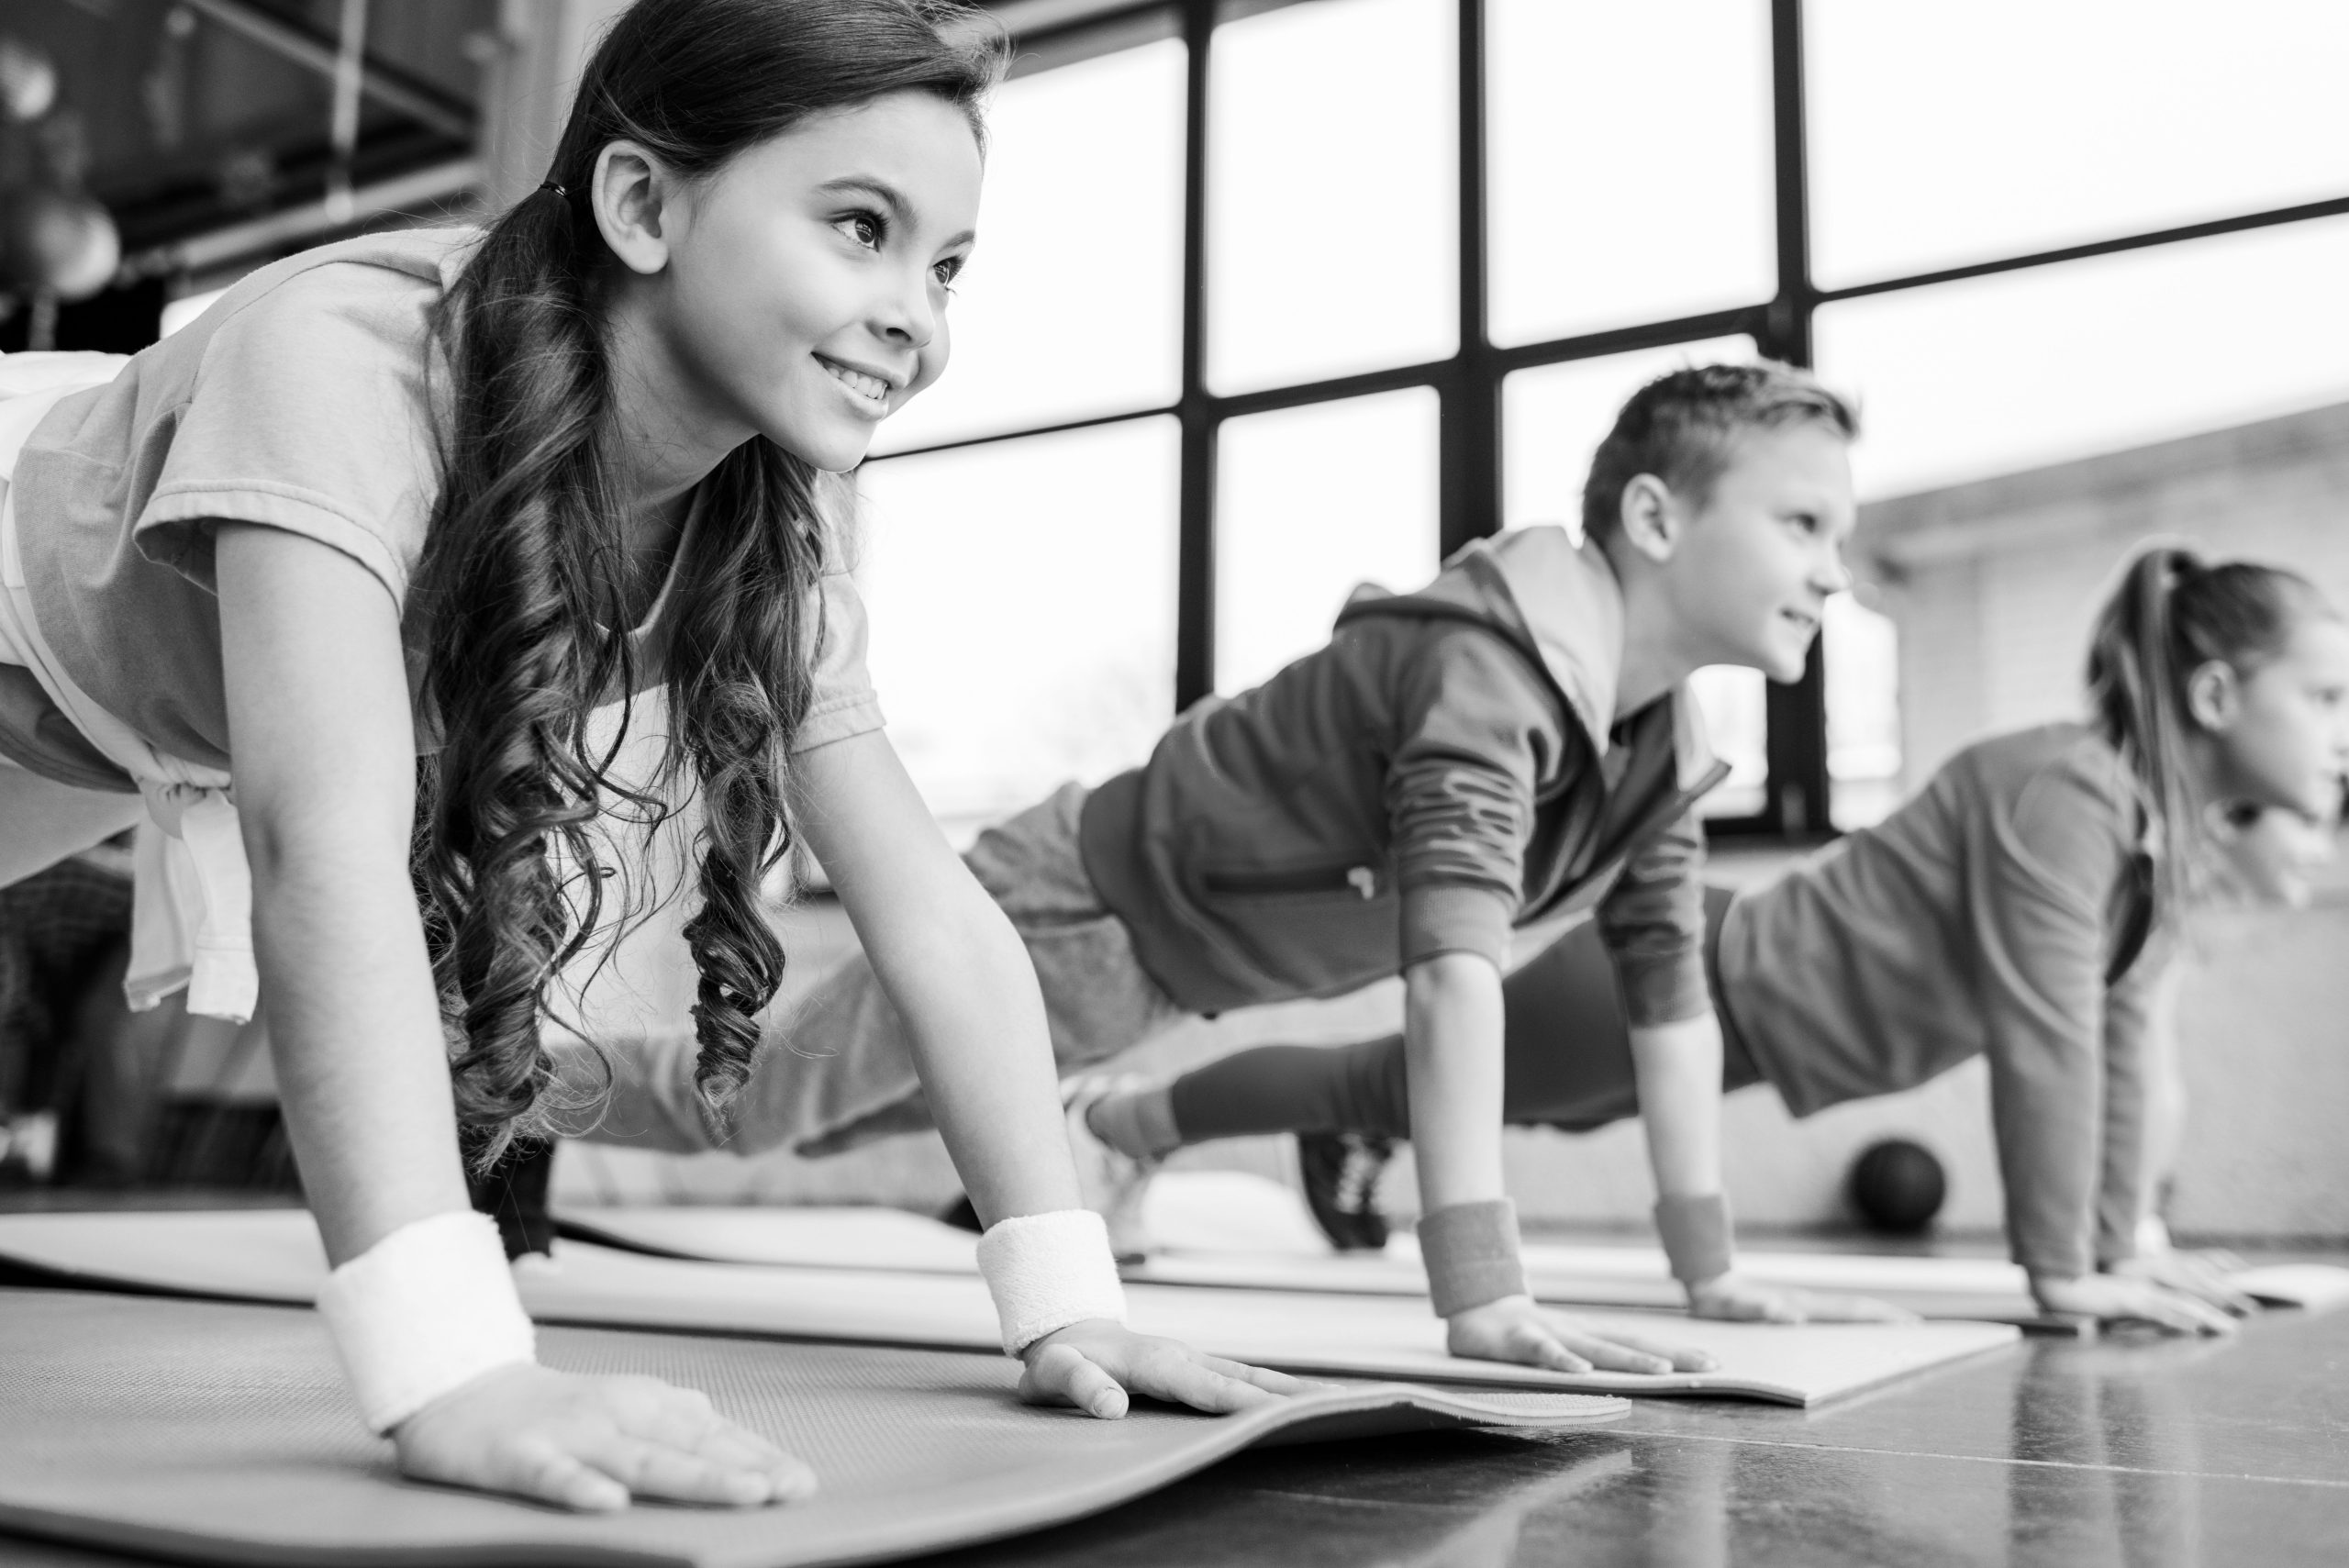 BW-smiling-kids-doing-plank-exercise-on-fitness-mats-2021-09-14-21-10-39-utc